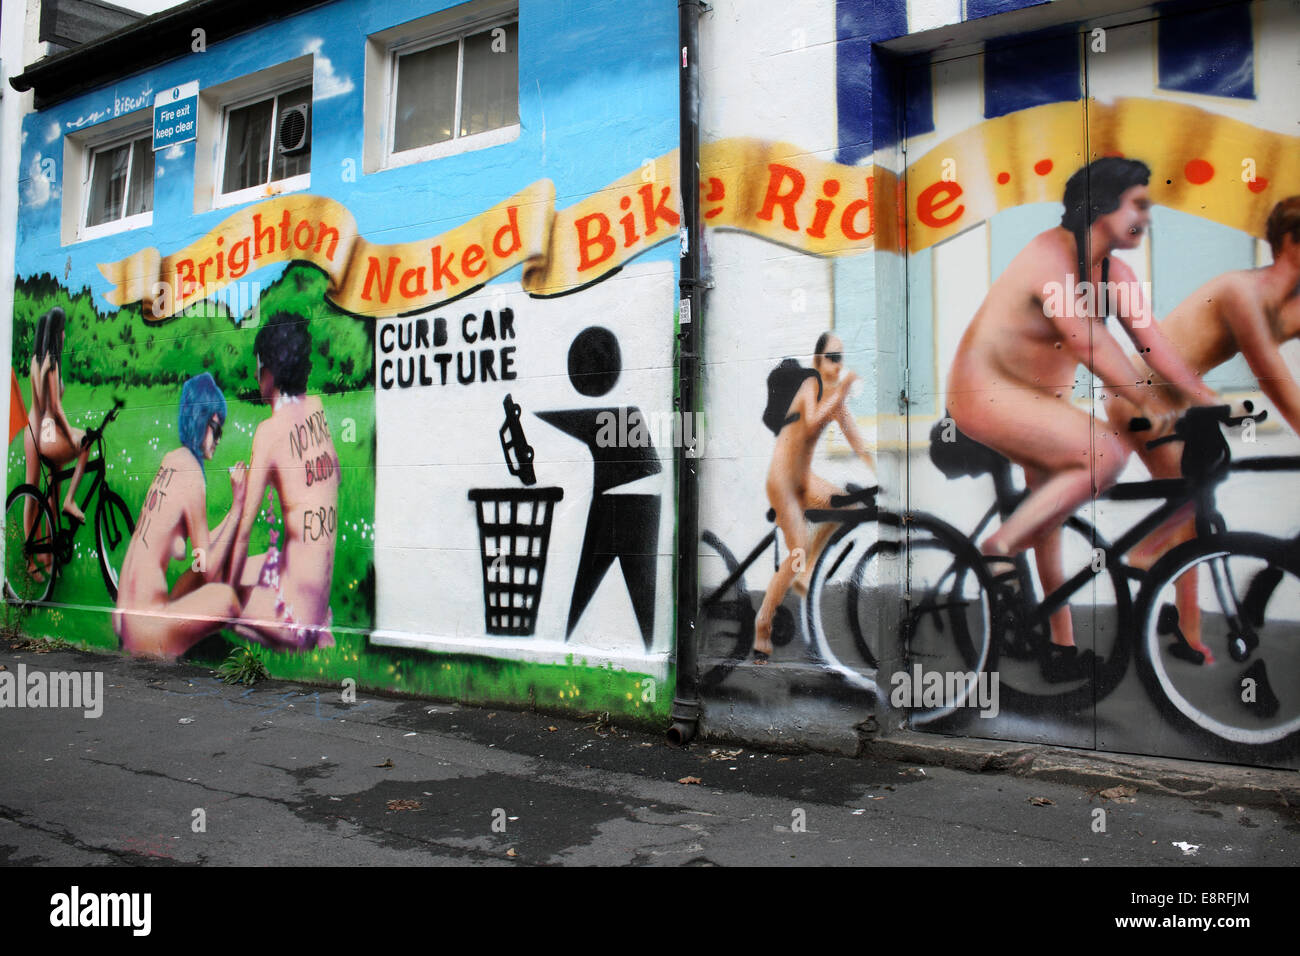 Partie d'une peinture murale représentant l'Assemblée Brighton Naked Bike Ride, dont le slogan "freiner" CULTURE AUTOMOBILE, Brighton. Banque D'Images